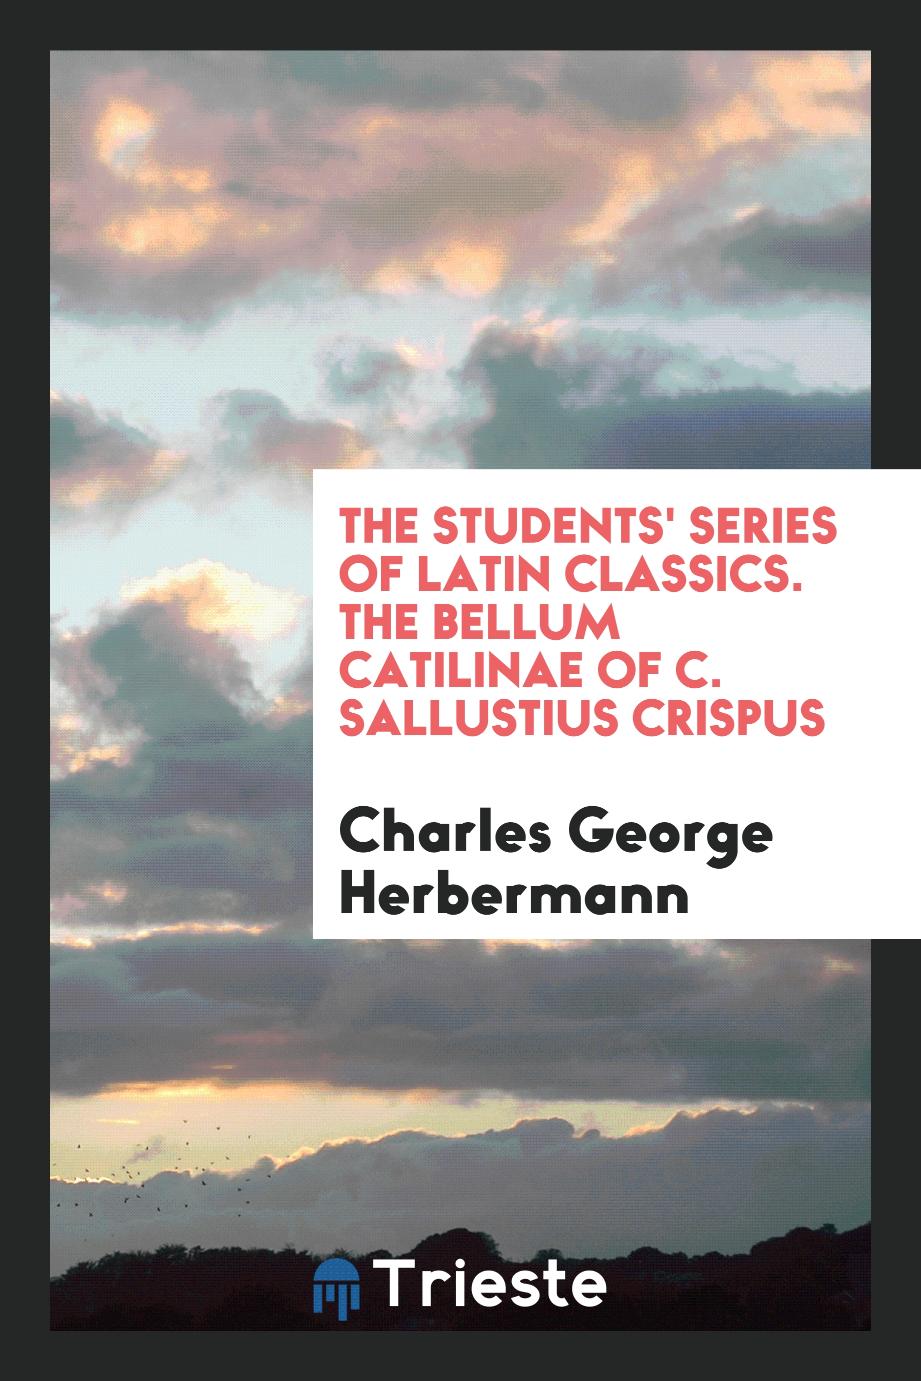 The Students' Series of Latin Classics. The Bellum Catilinae of C. Sallustius Crispus